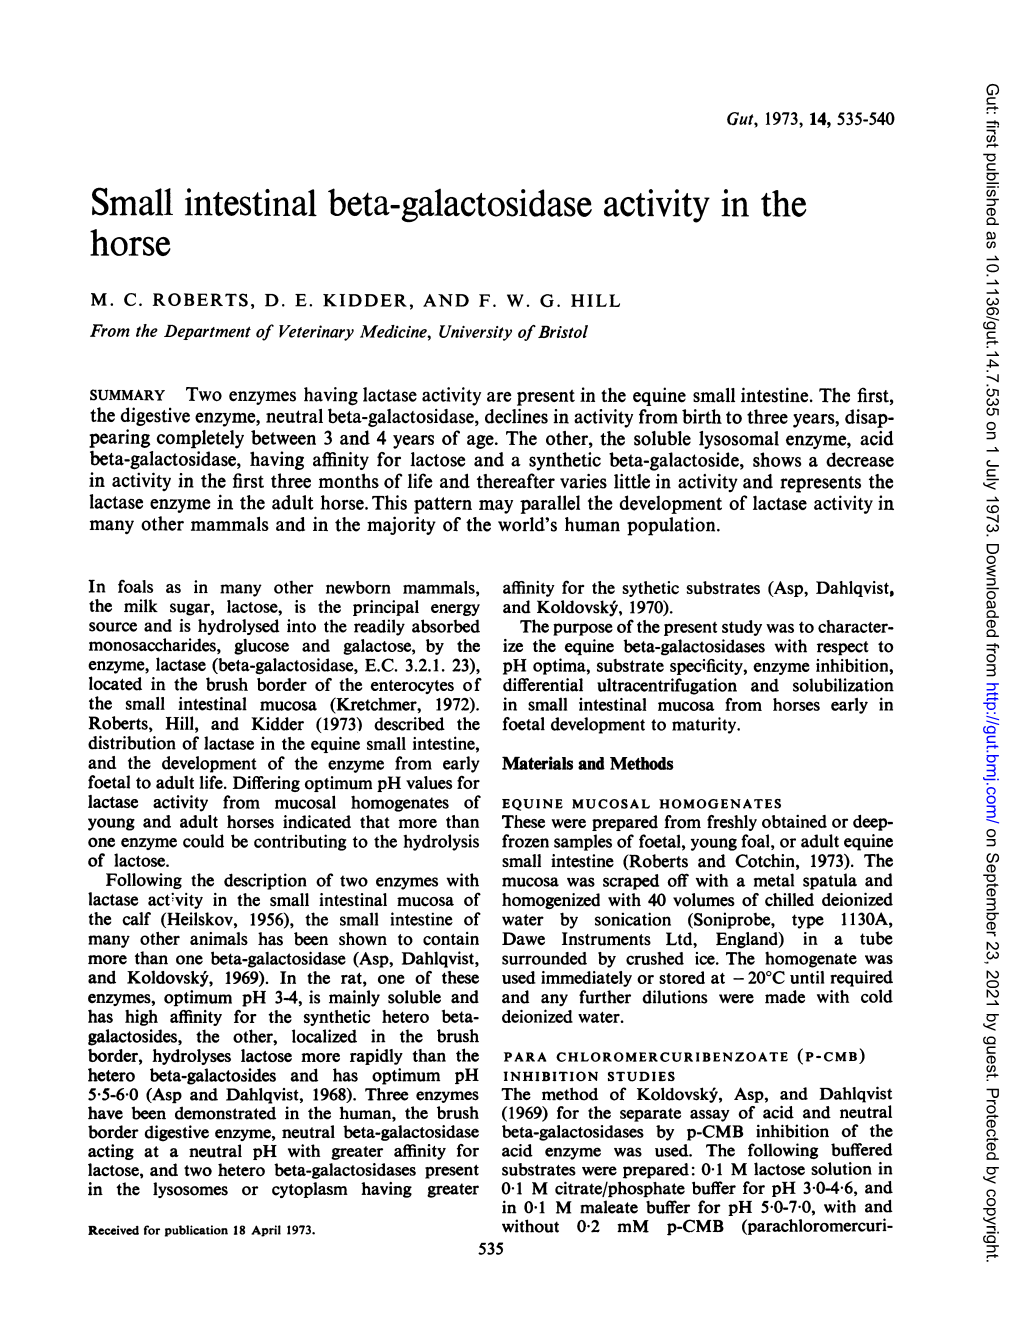 Small Intestinal Beta-Galactosidase Activity Inthe